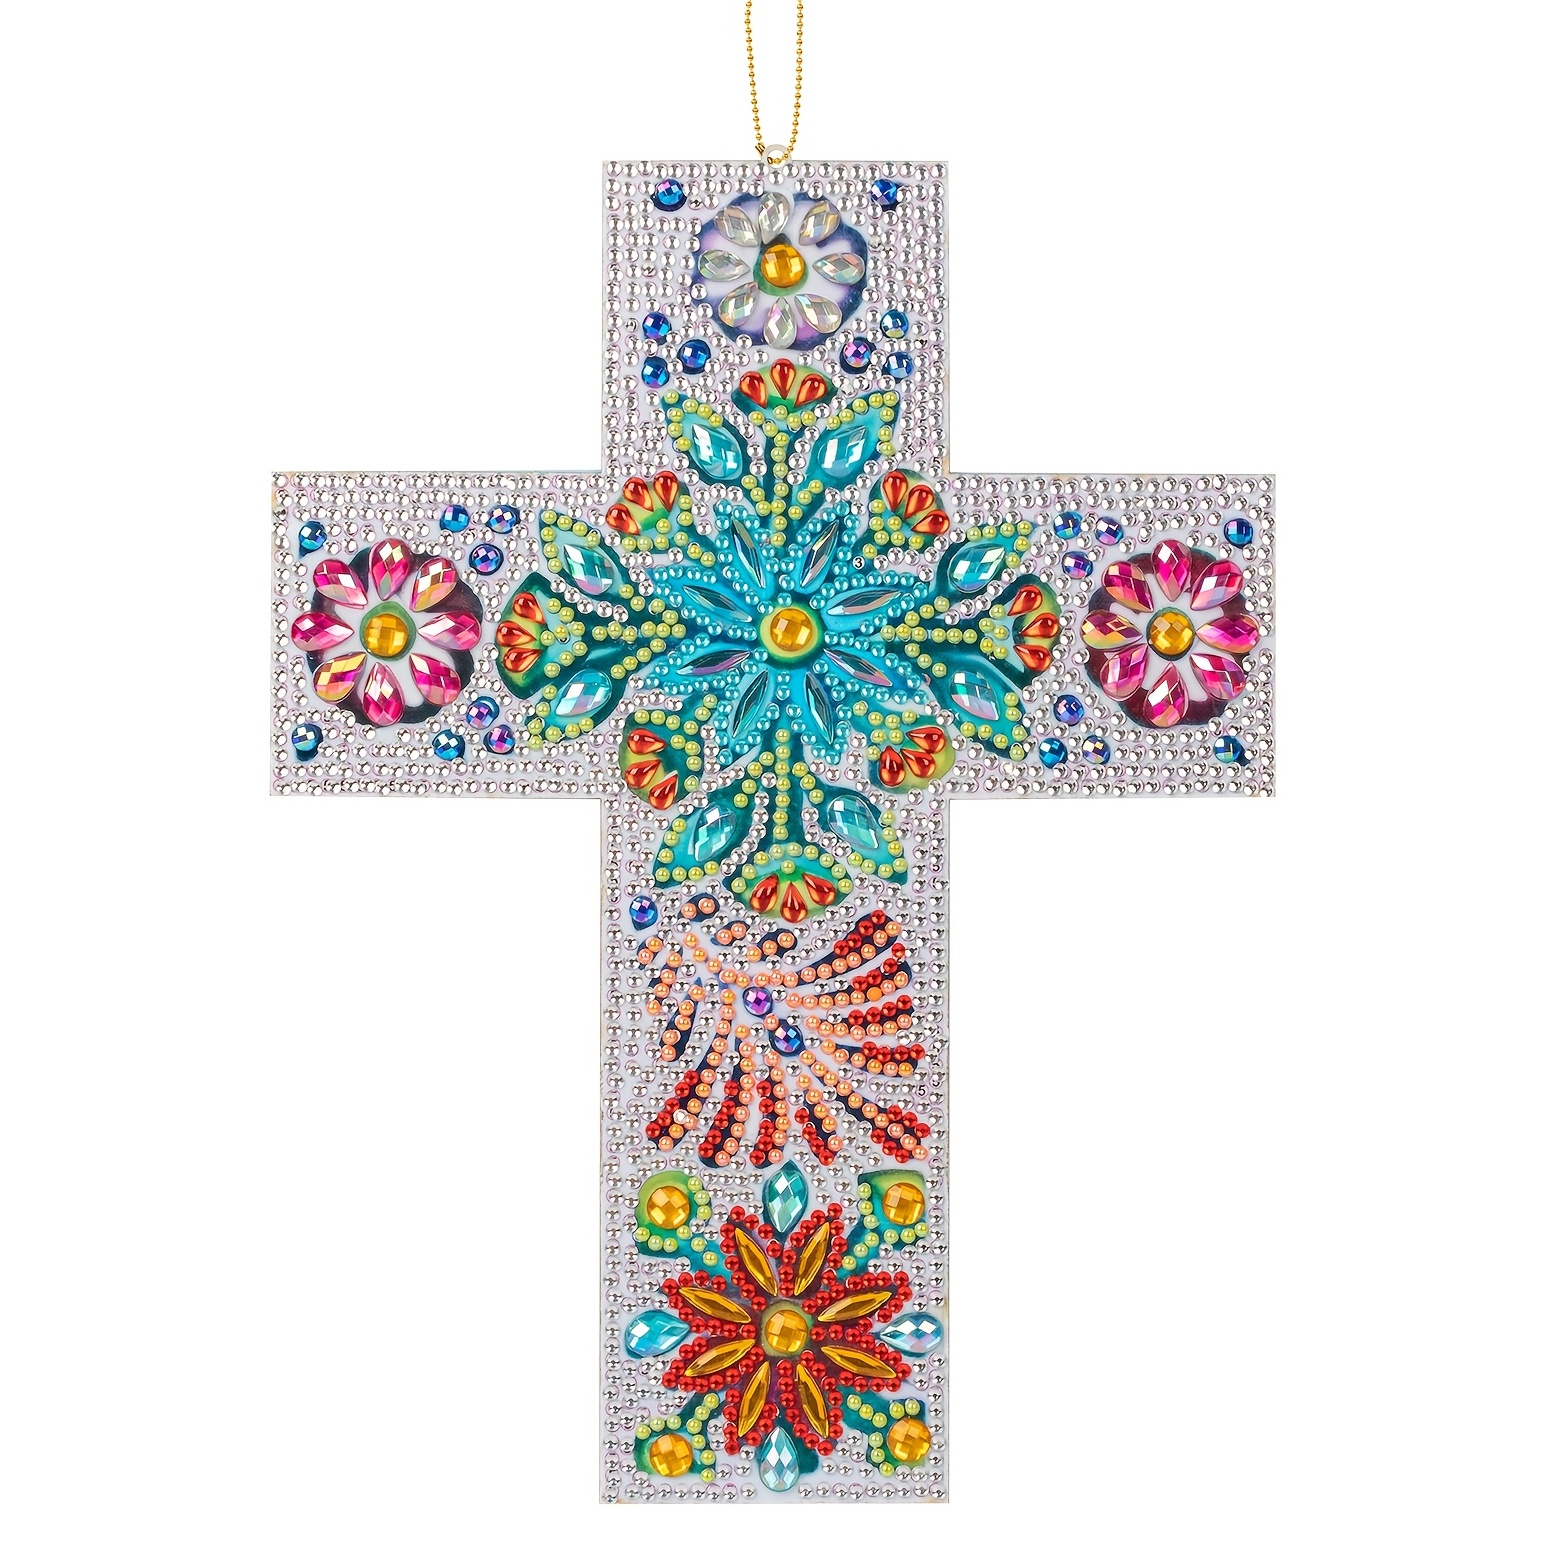 1Set Jesus Diamond Painting Rhinestone Mosaic Embroidery Kit DIY